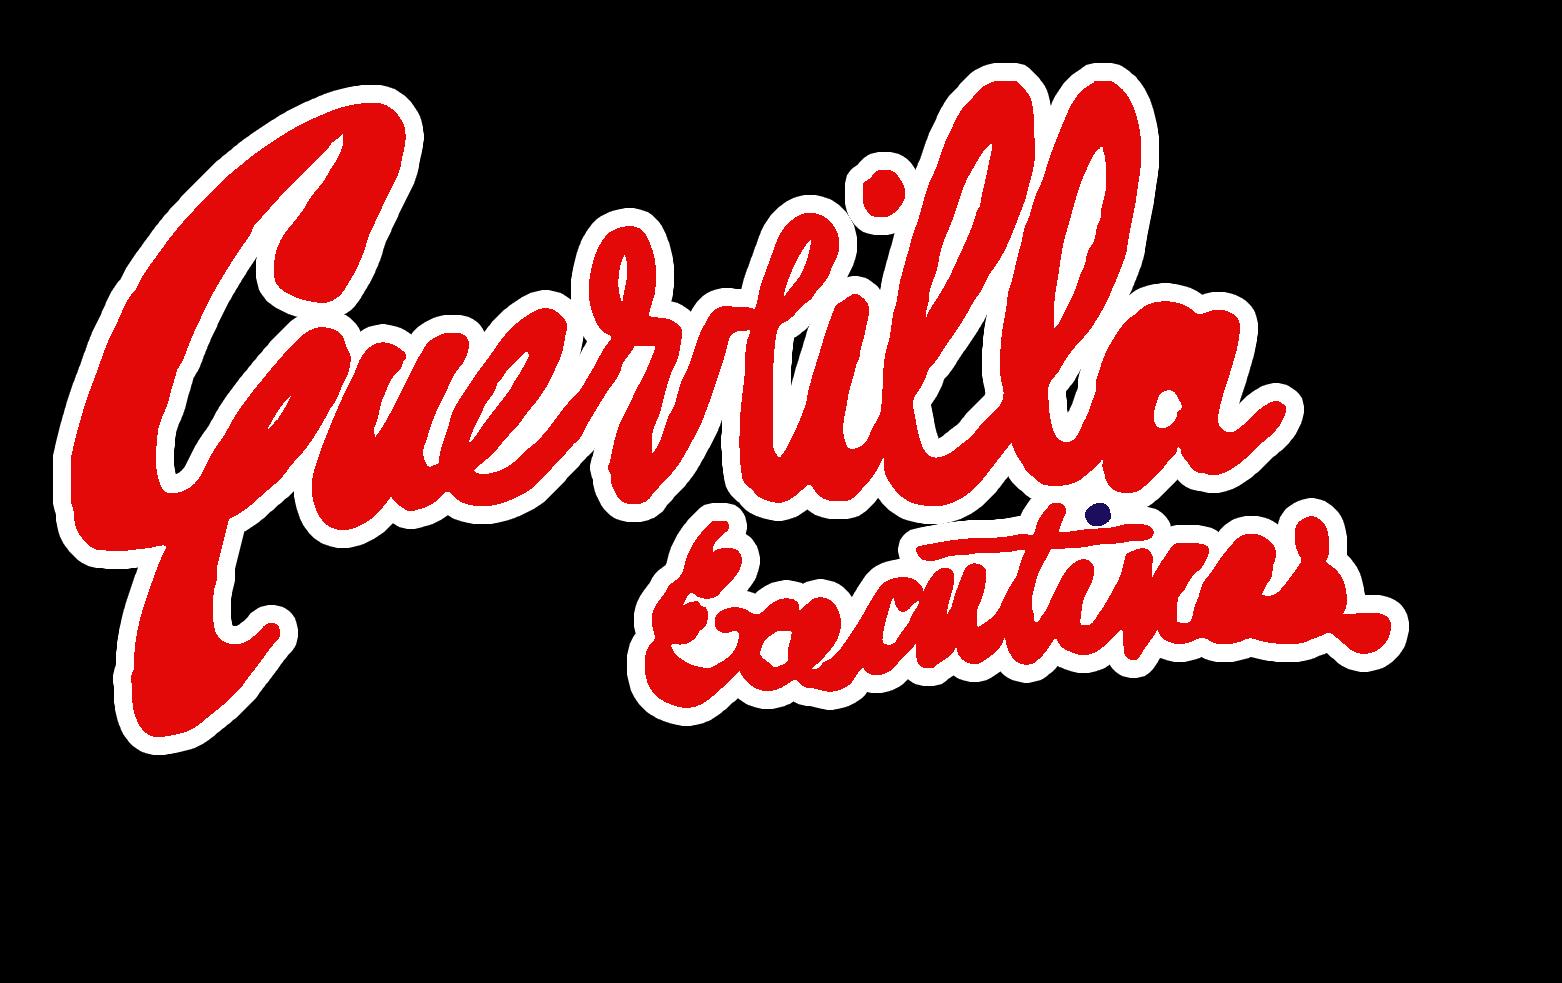 Guerrilla Executives